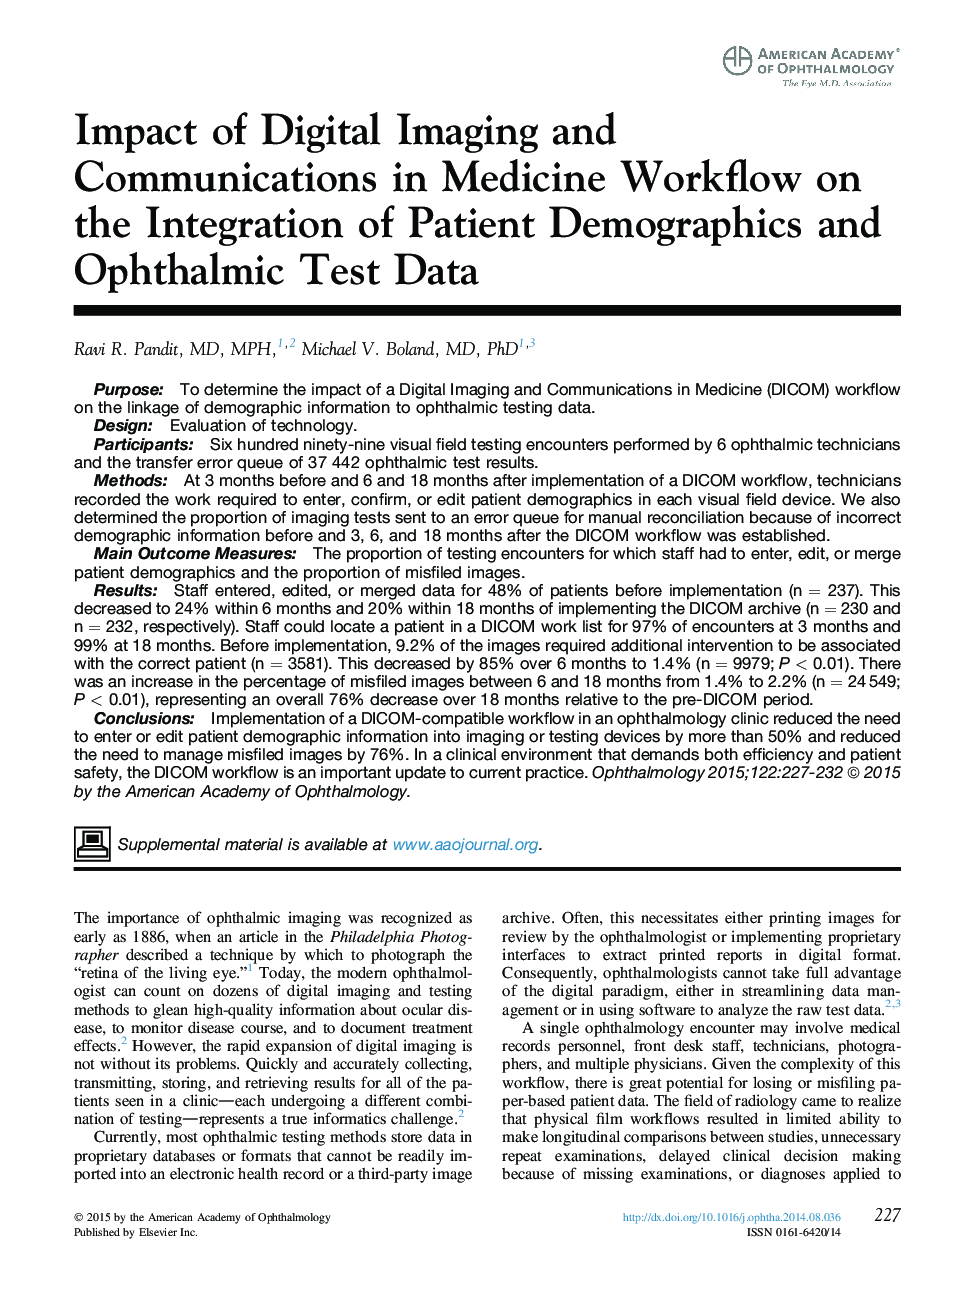 تأثیر تصویربرداری دیجیتال و ارتباطات در گردش کار پزشکی بر ادغام جمعیت های بیمار و داده های آزمایشی چشم 